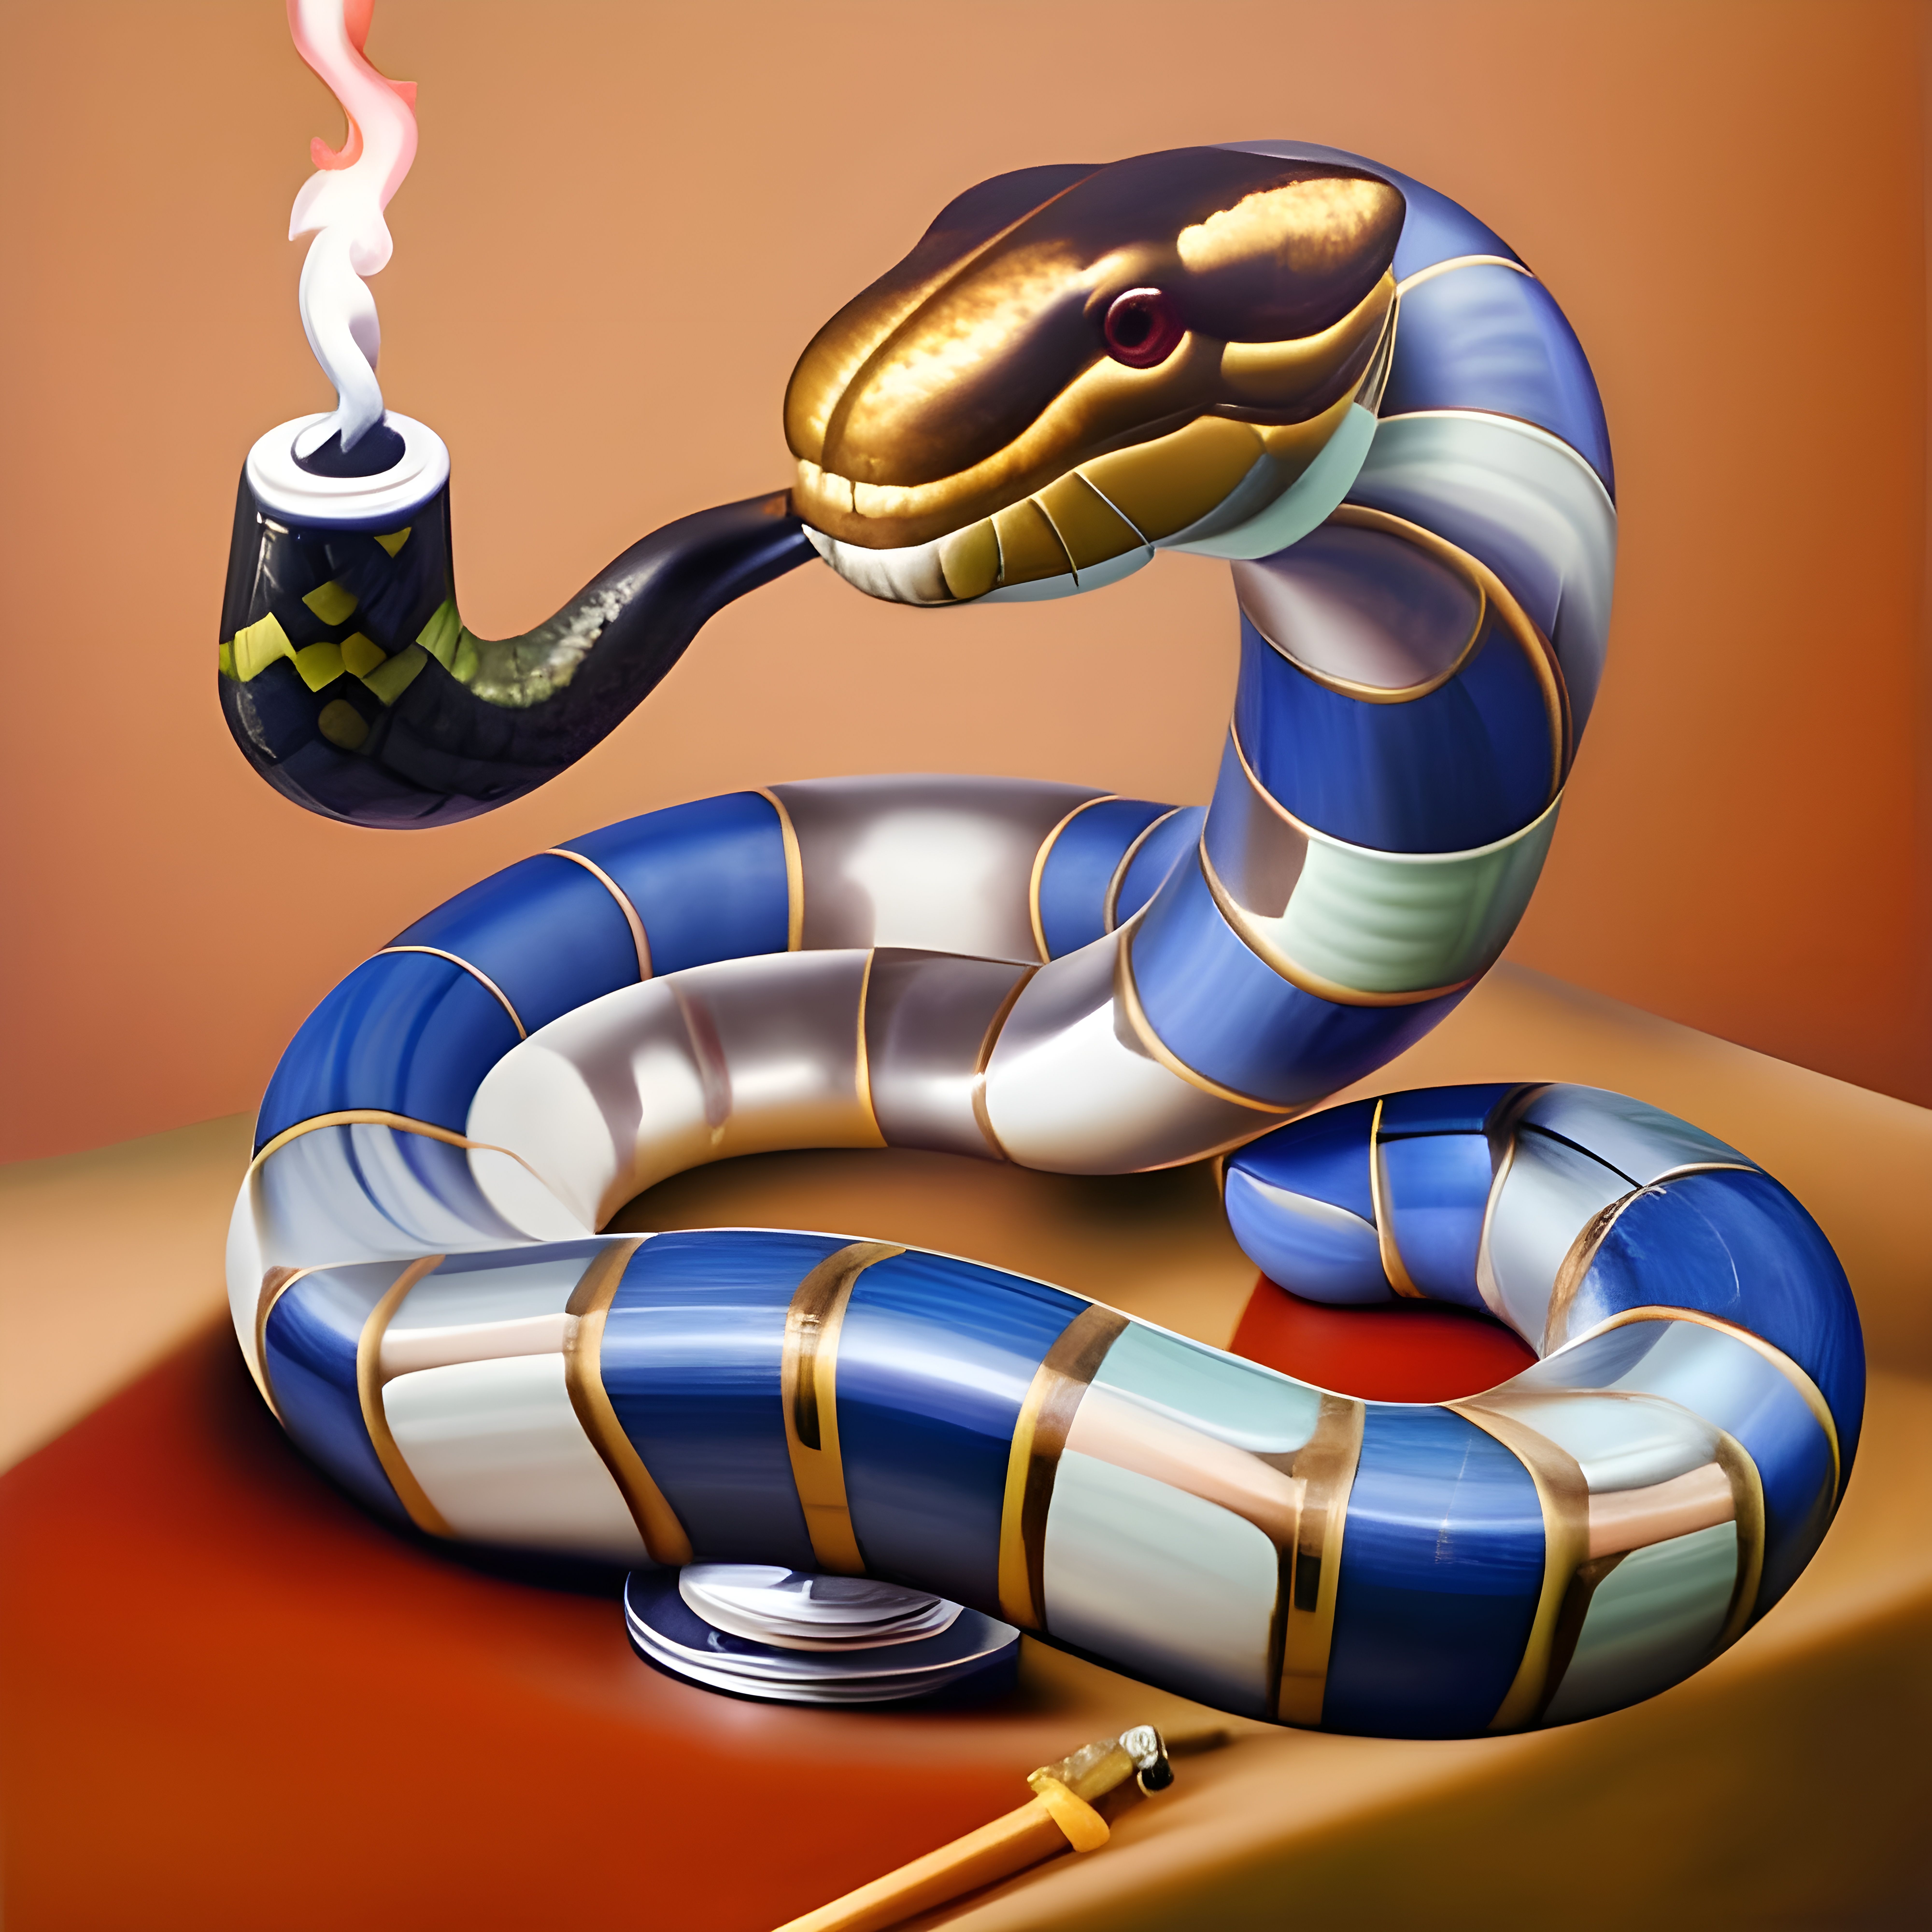 Sabaton - Smoking Snakes (Live At Brasil) 